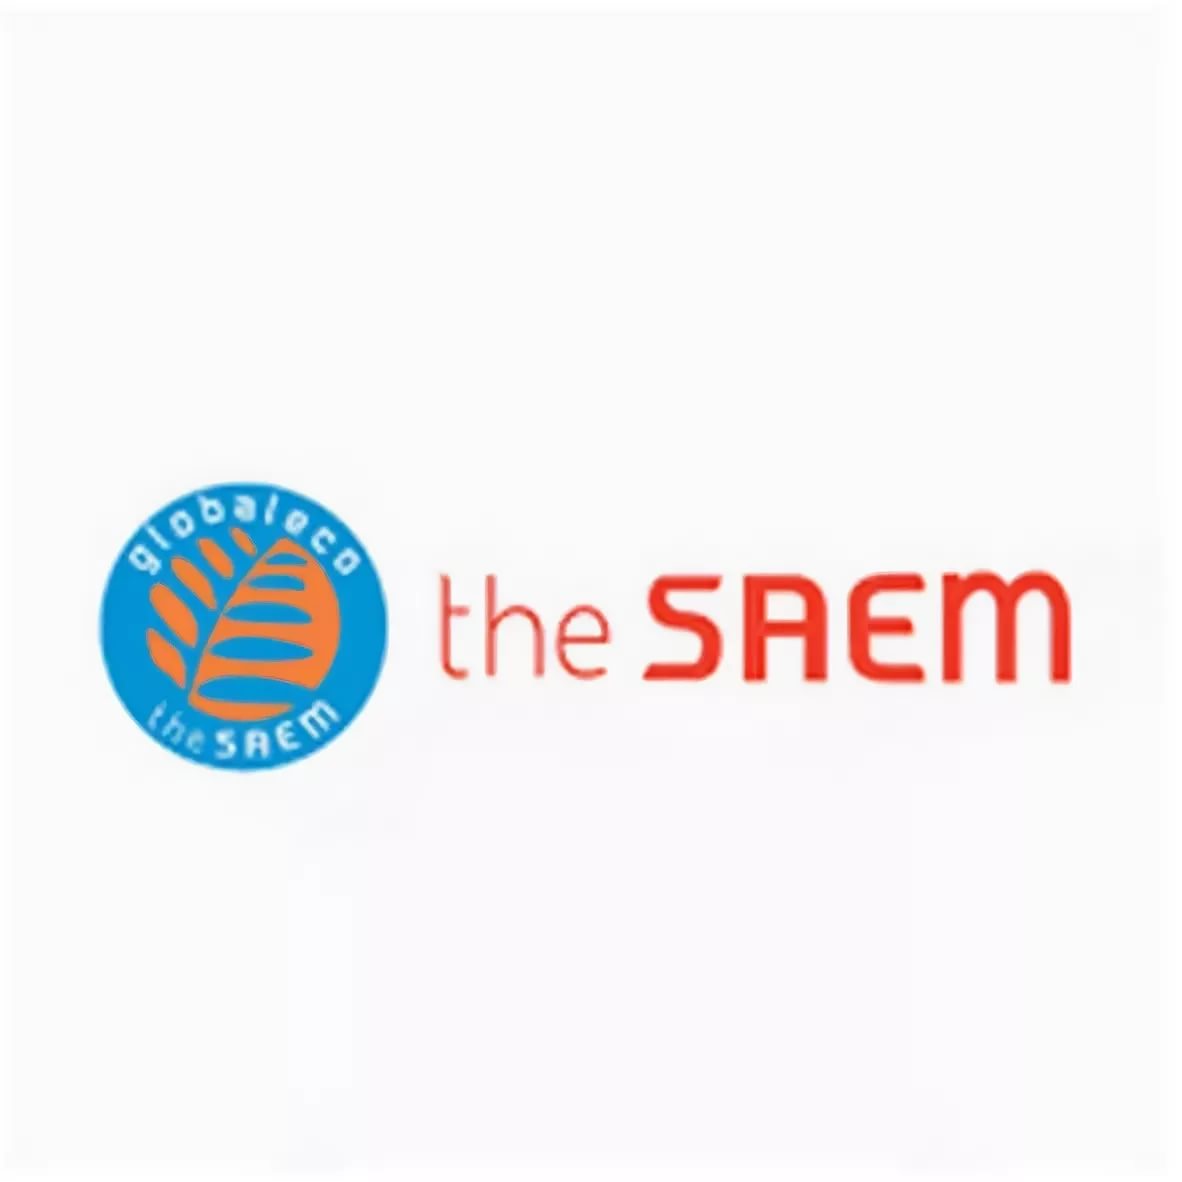 The saem